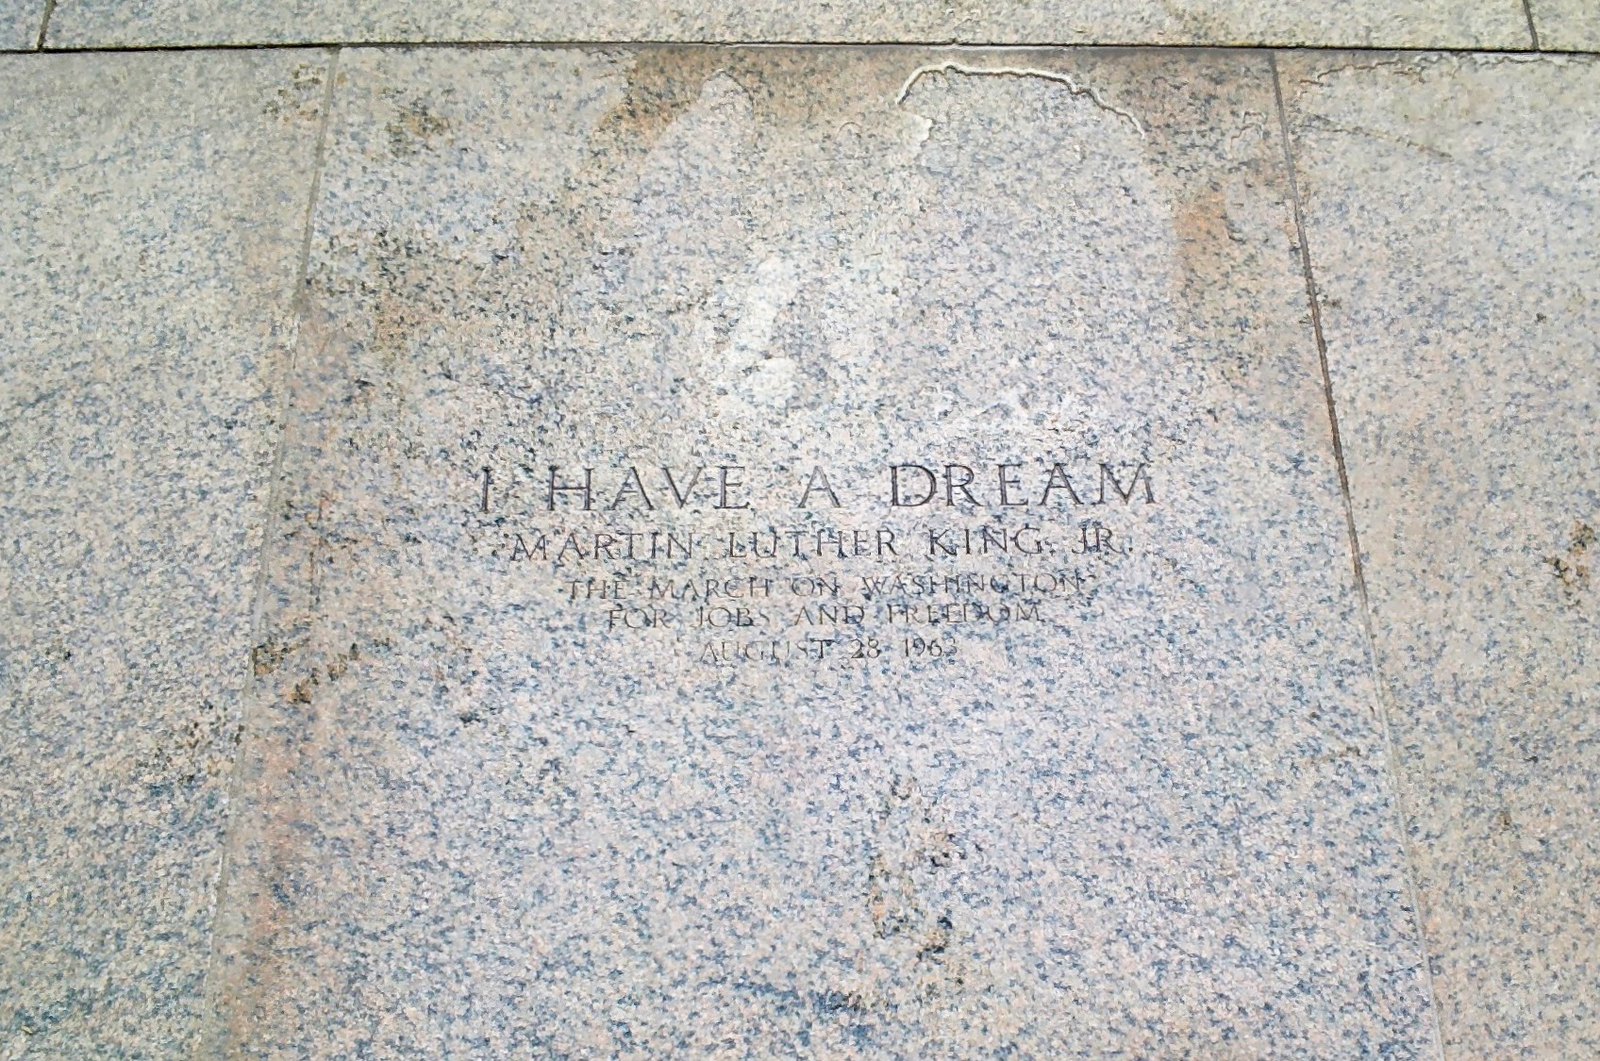 Lincoln Memorial - "I Have a Dream" Throughglass 27268